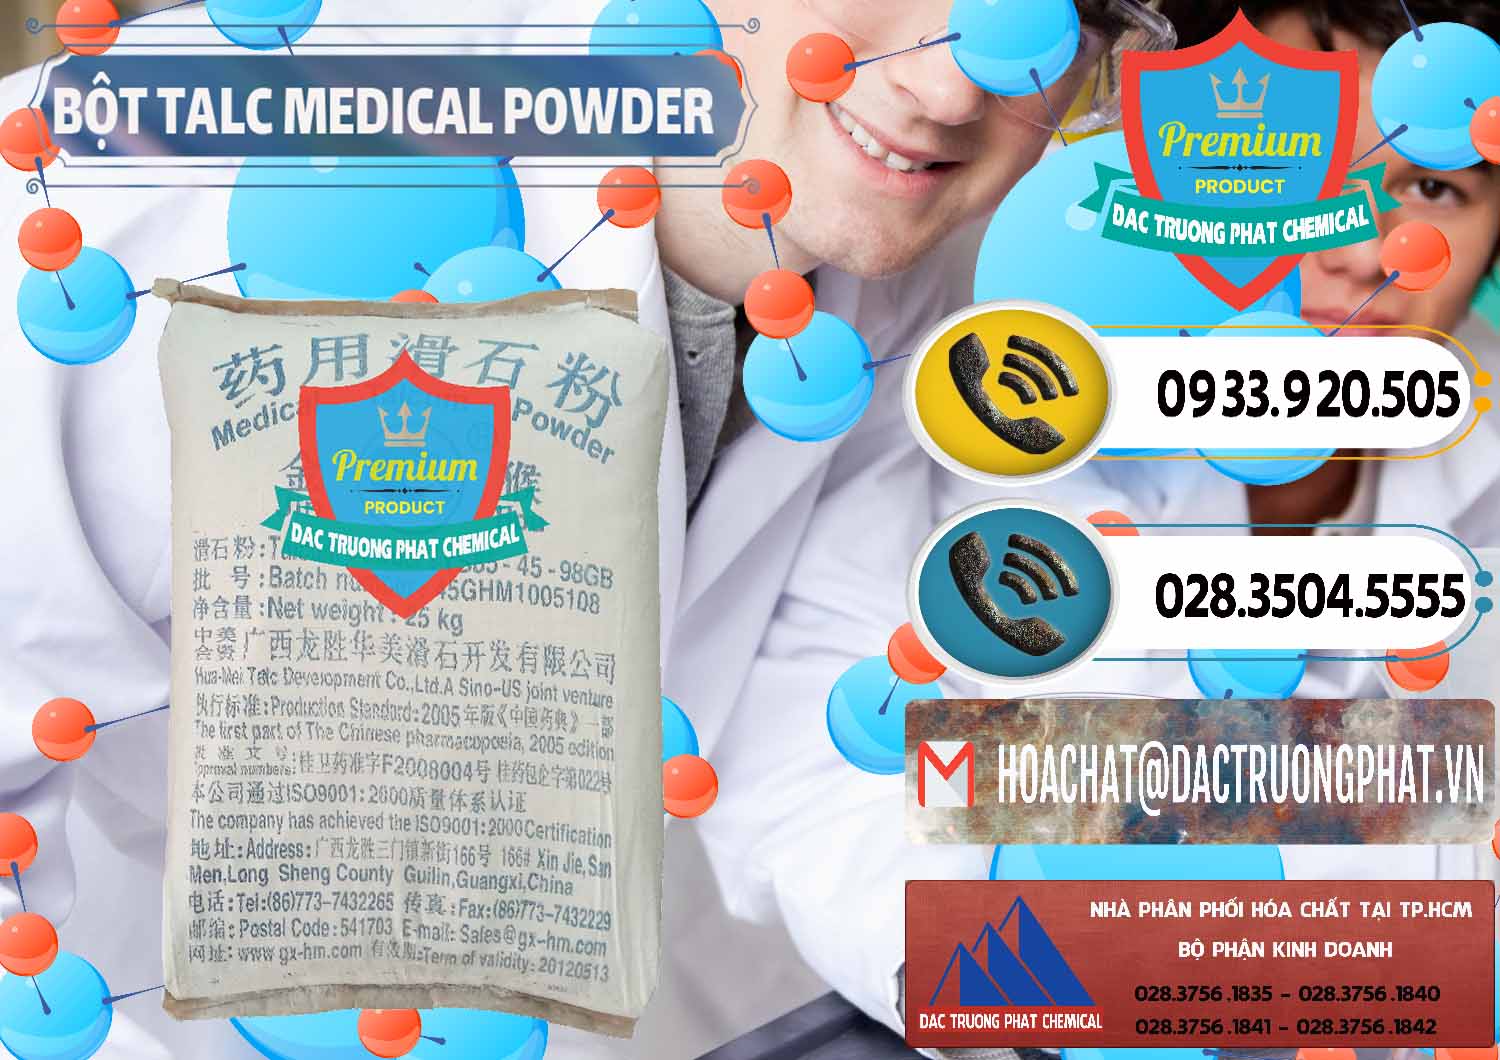 Công ty chuyên bán và phân phối Bột Talc Medical Powder Trung Quốc China - 0036 - Cty bán ( phân phối ) hóa chất tại TP.HCM - hoachatdetnhuom.vn